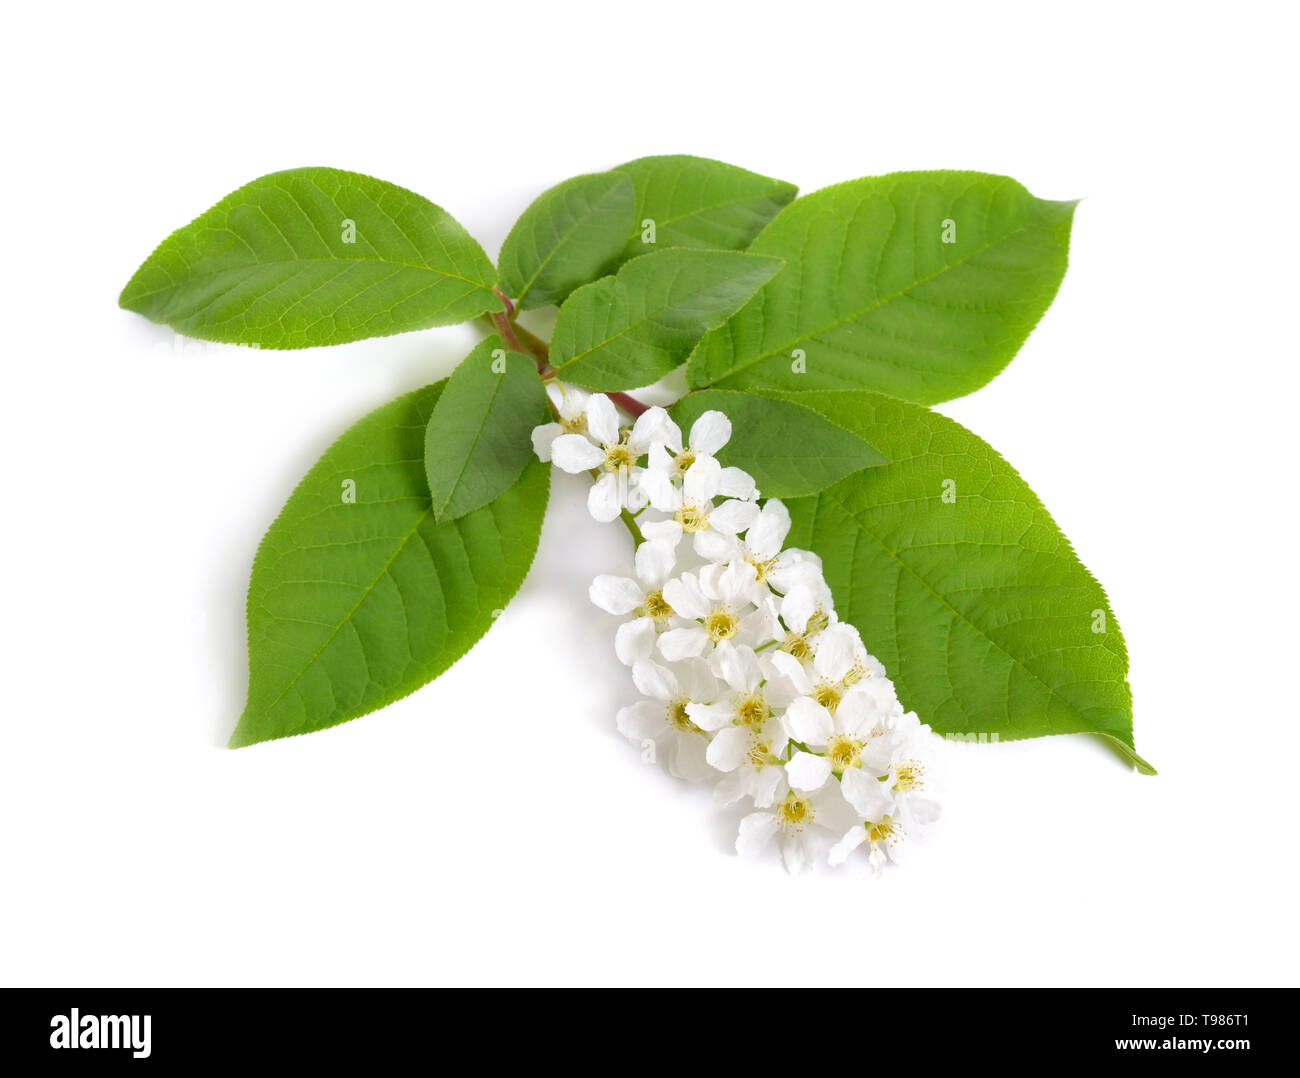 Prunus padus, connu sous le nom de bird cherry, micocoulier, hagberry ou prunier. Des fleurs. Isolé sur fond blanc Banque D'Images